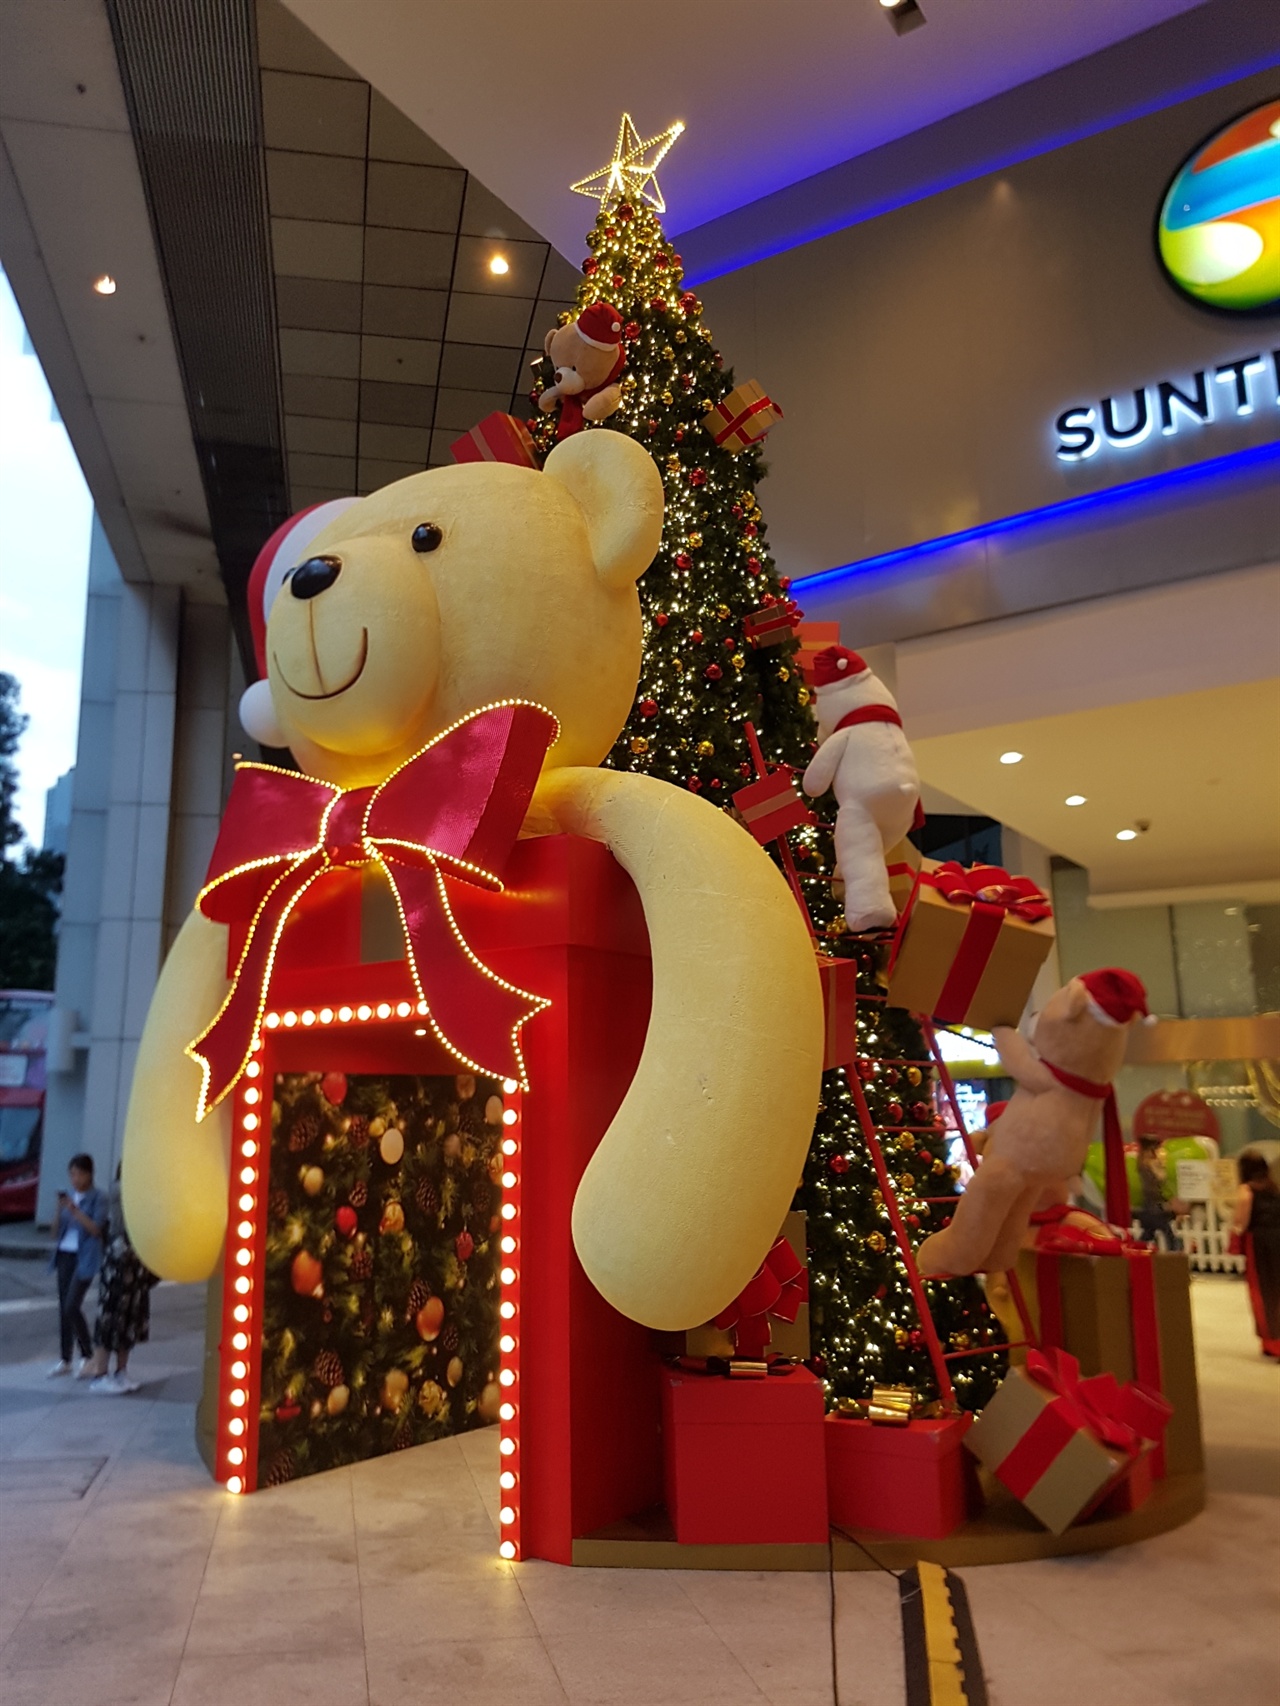 싱가포르는 크리스마스 성수기 때 쇼핑을 장려하기 위해서 쇼핑몰은 11월 1일부터 매년 테마를 선정해서 크리스마스 장식을 한다.  올해 Suntec은 고돌이를 소재로 했다. 